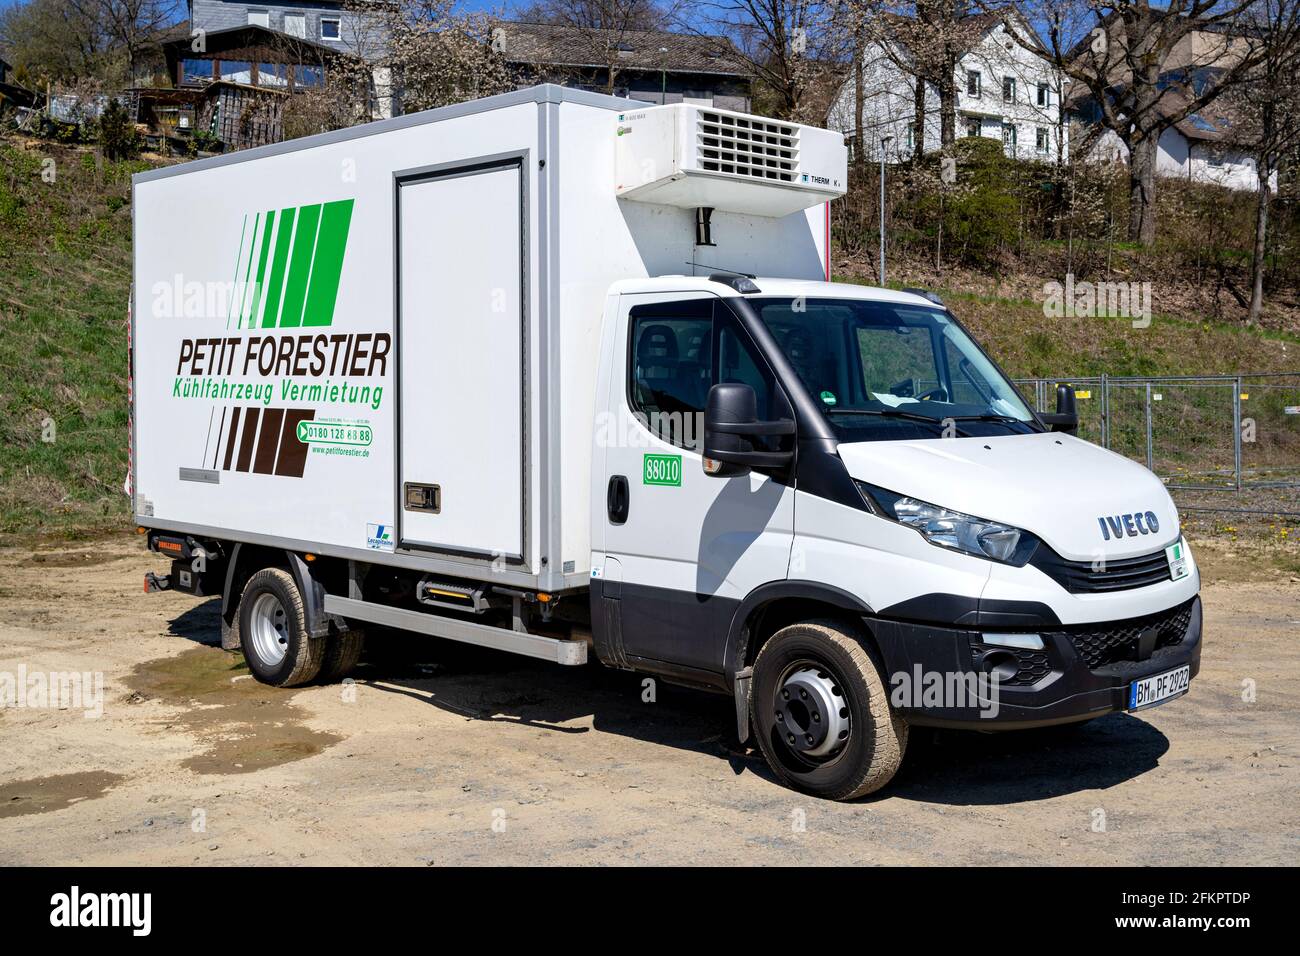 Petit Forestier Iveco pulmino giornaliero. Petit Forestier è il leader europeo nel noleggio di veicoli refrigerati e container. Foto Stock